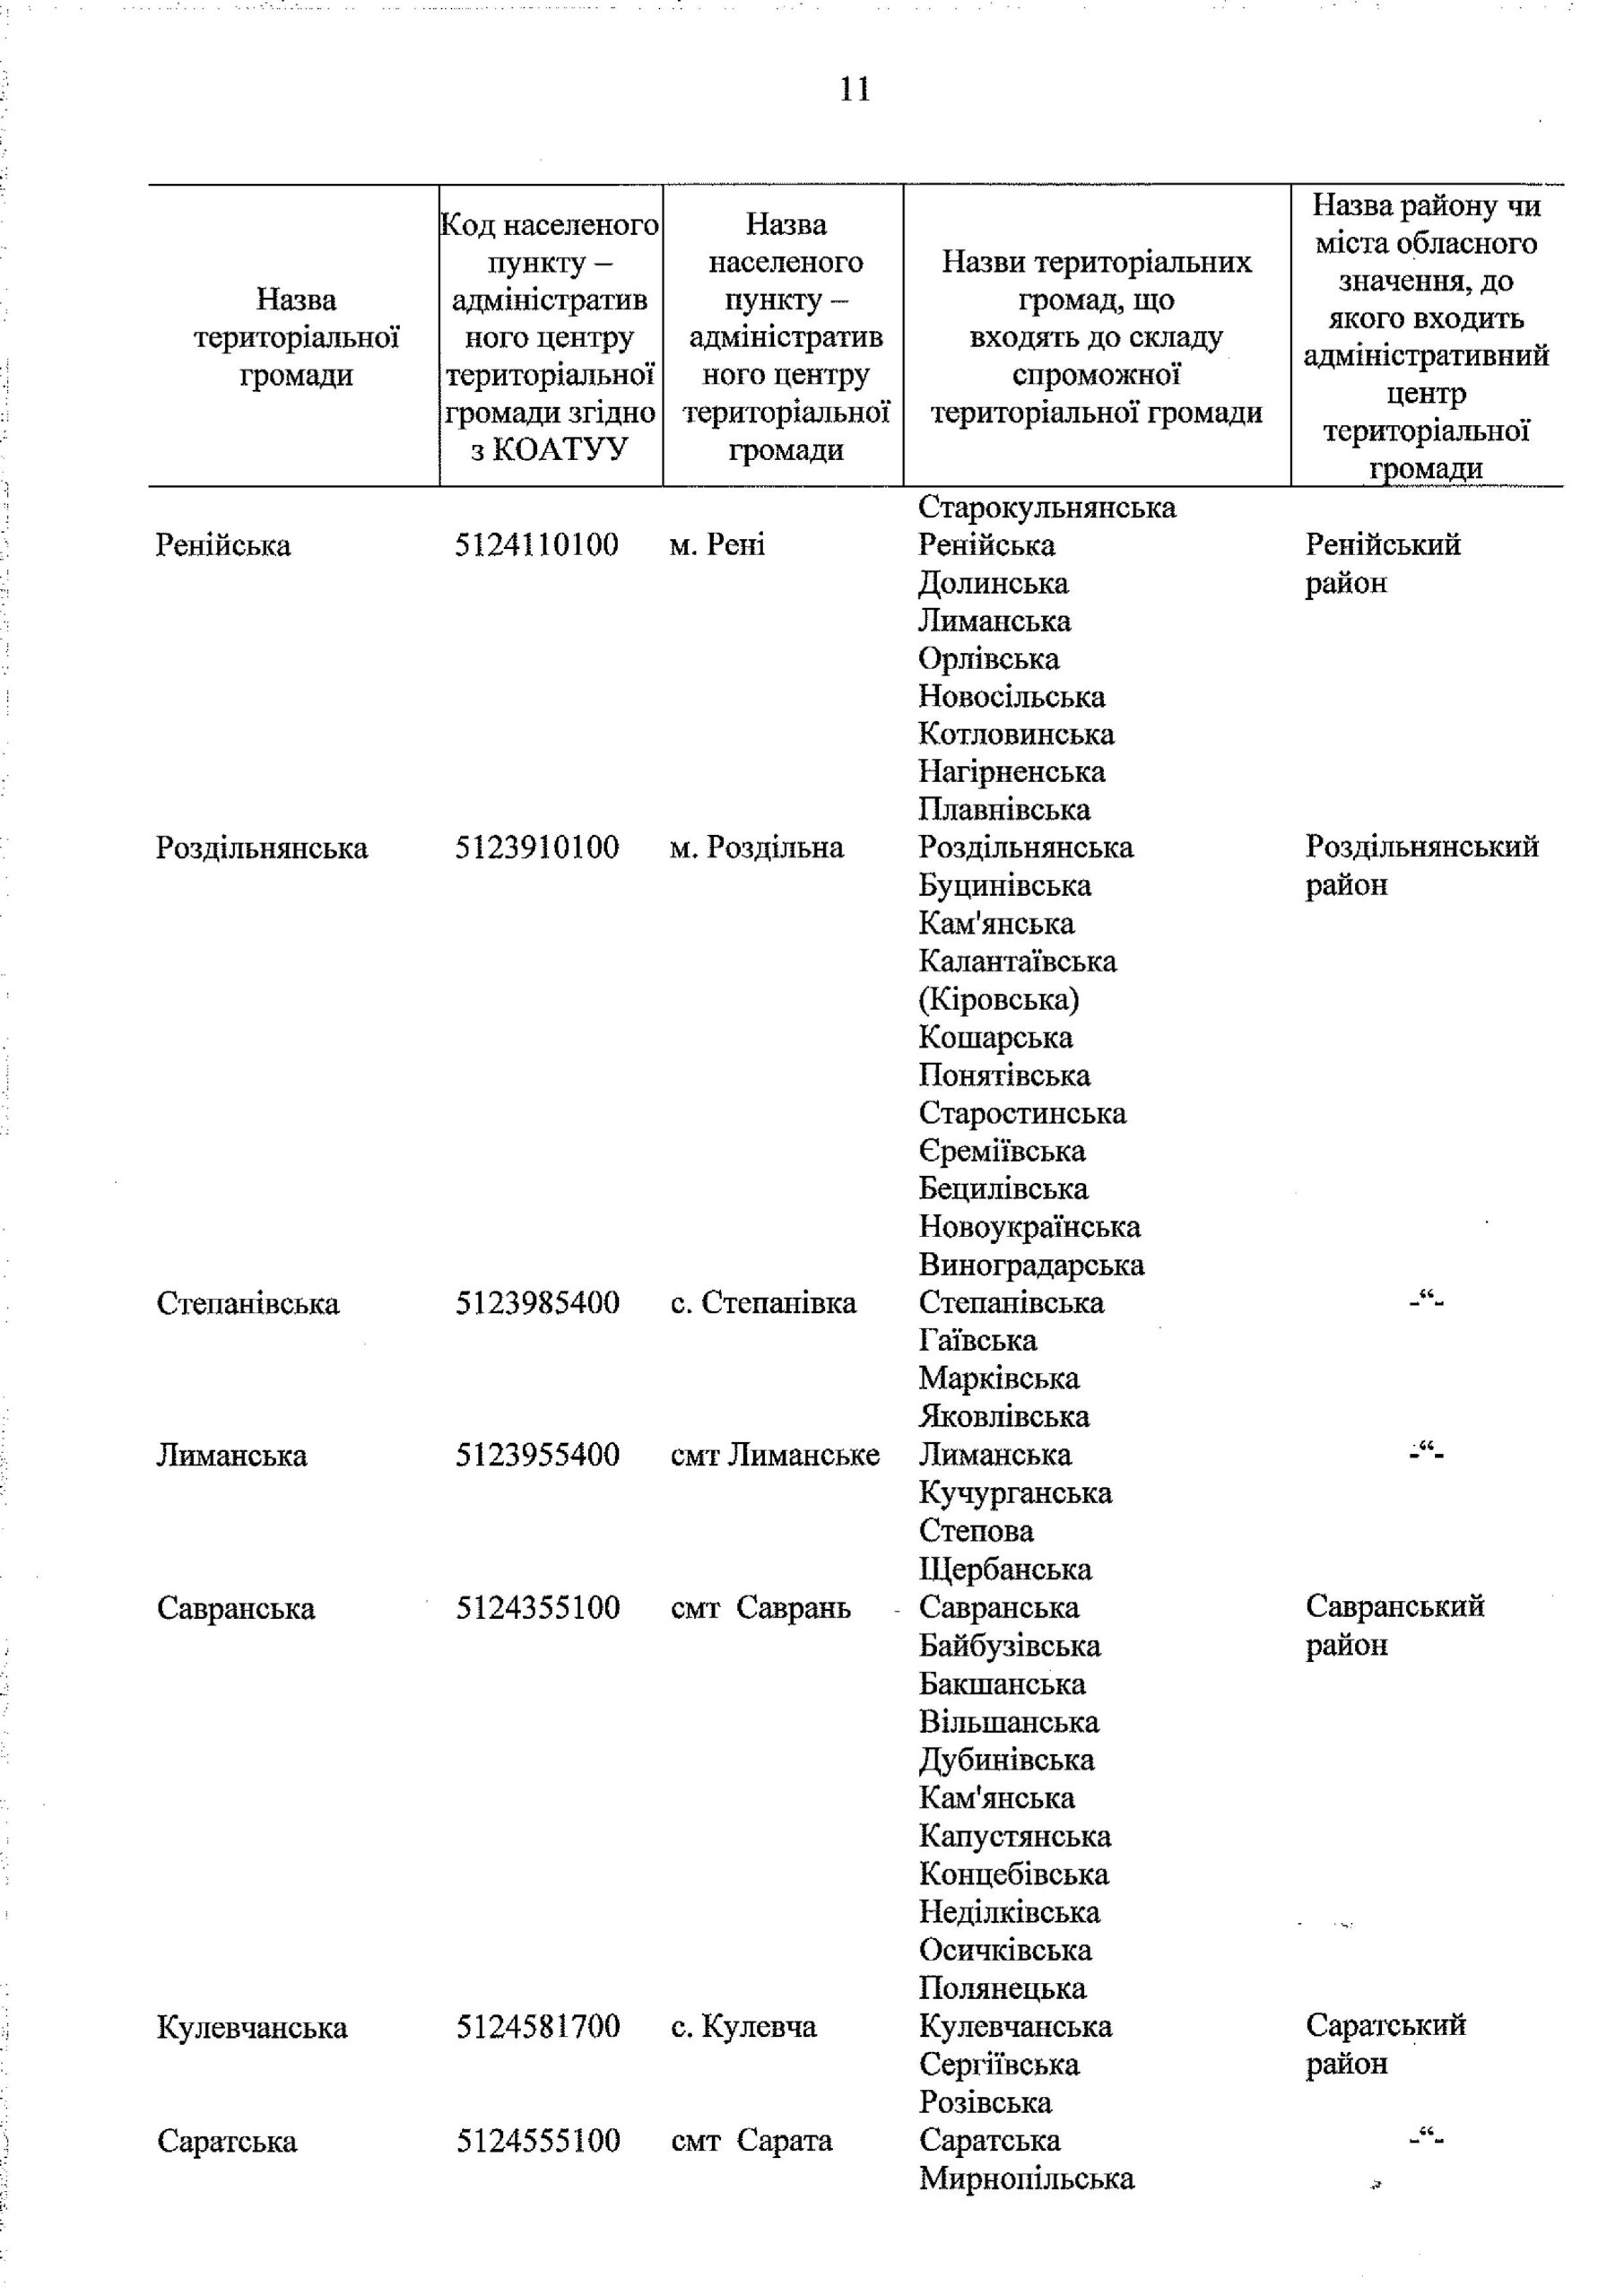 Кабмин утвердил перспективный план формирования ОТГ в Одесской области (документ)